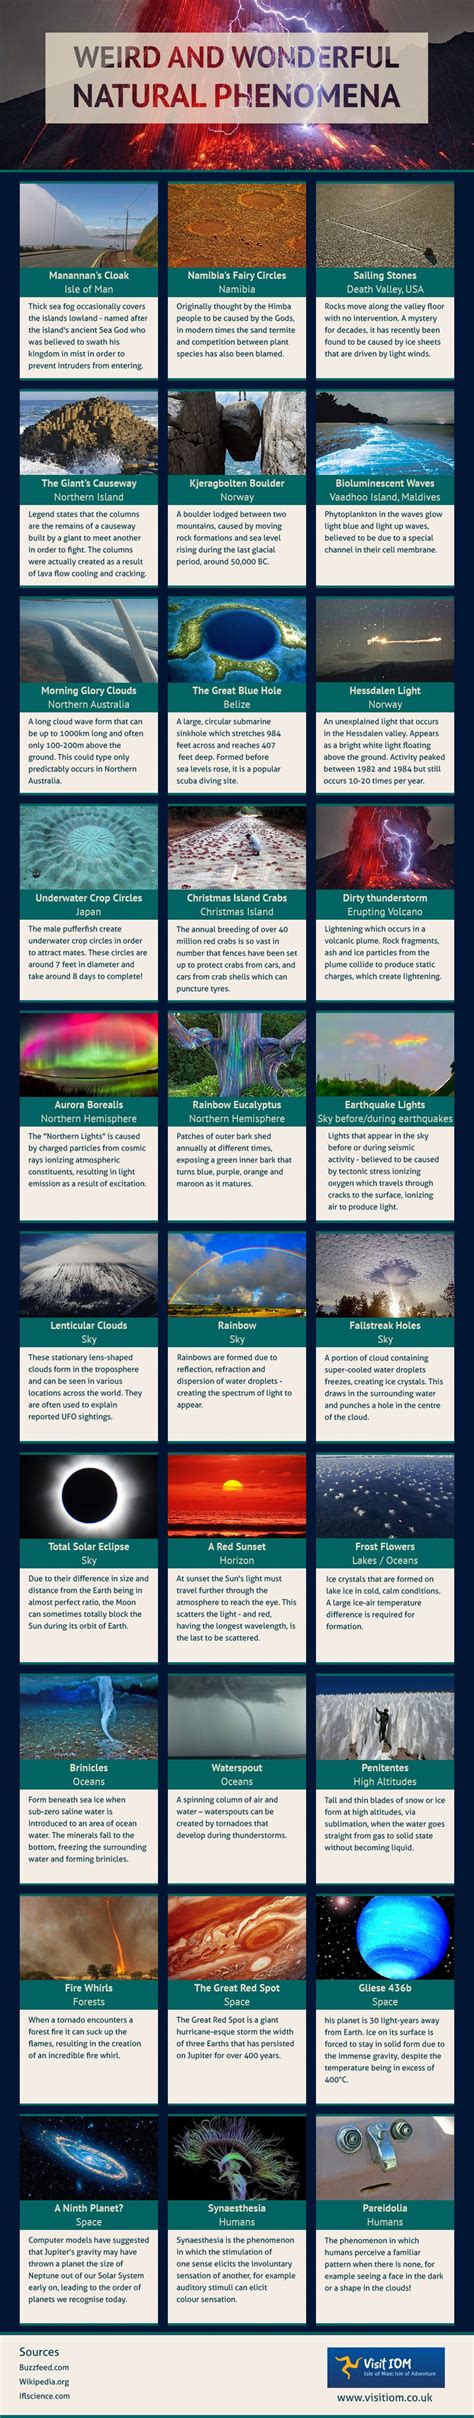 Weird and Wonderful Natural Phenomena Around the World | Natural phenomena, Travel infographic ...